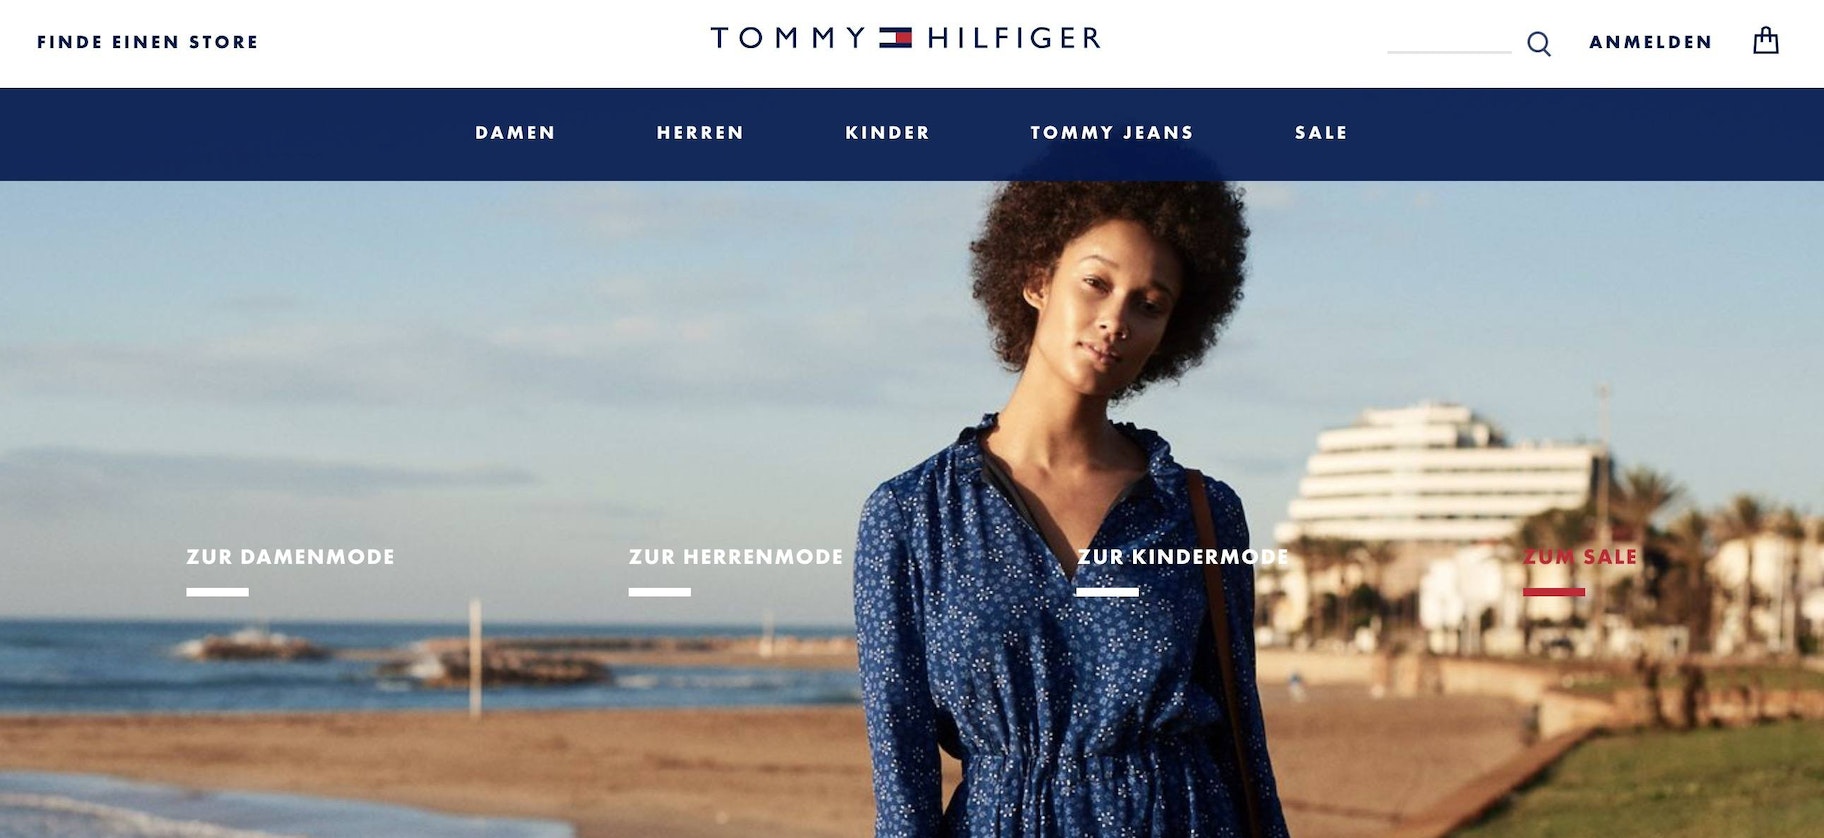 Tommy Hilfiger网上商店